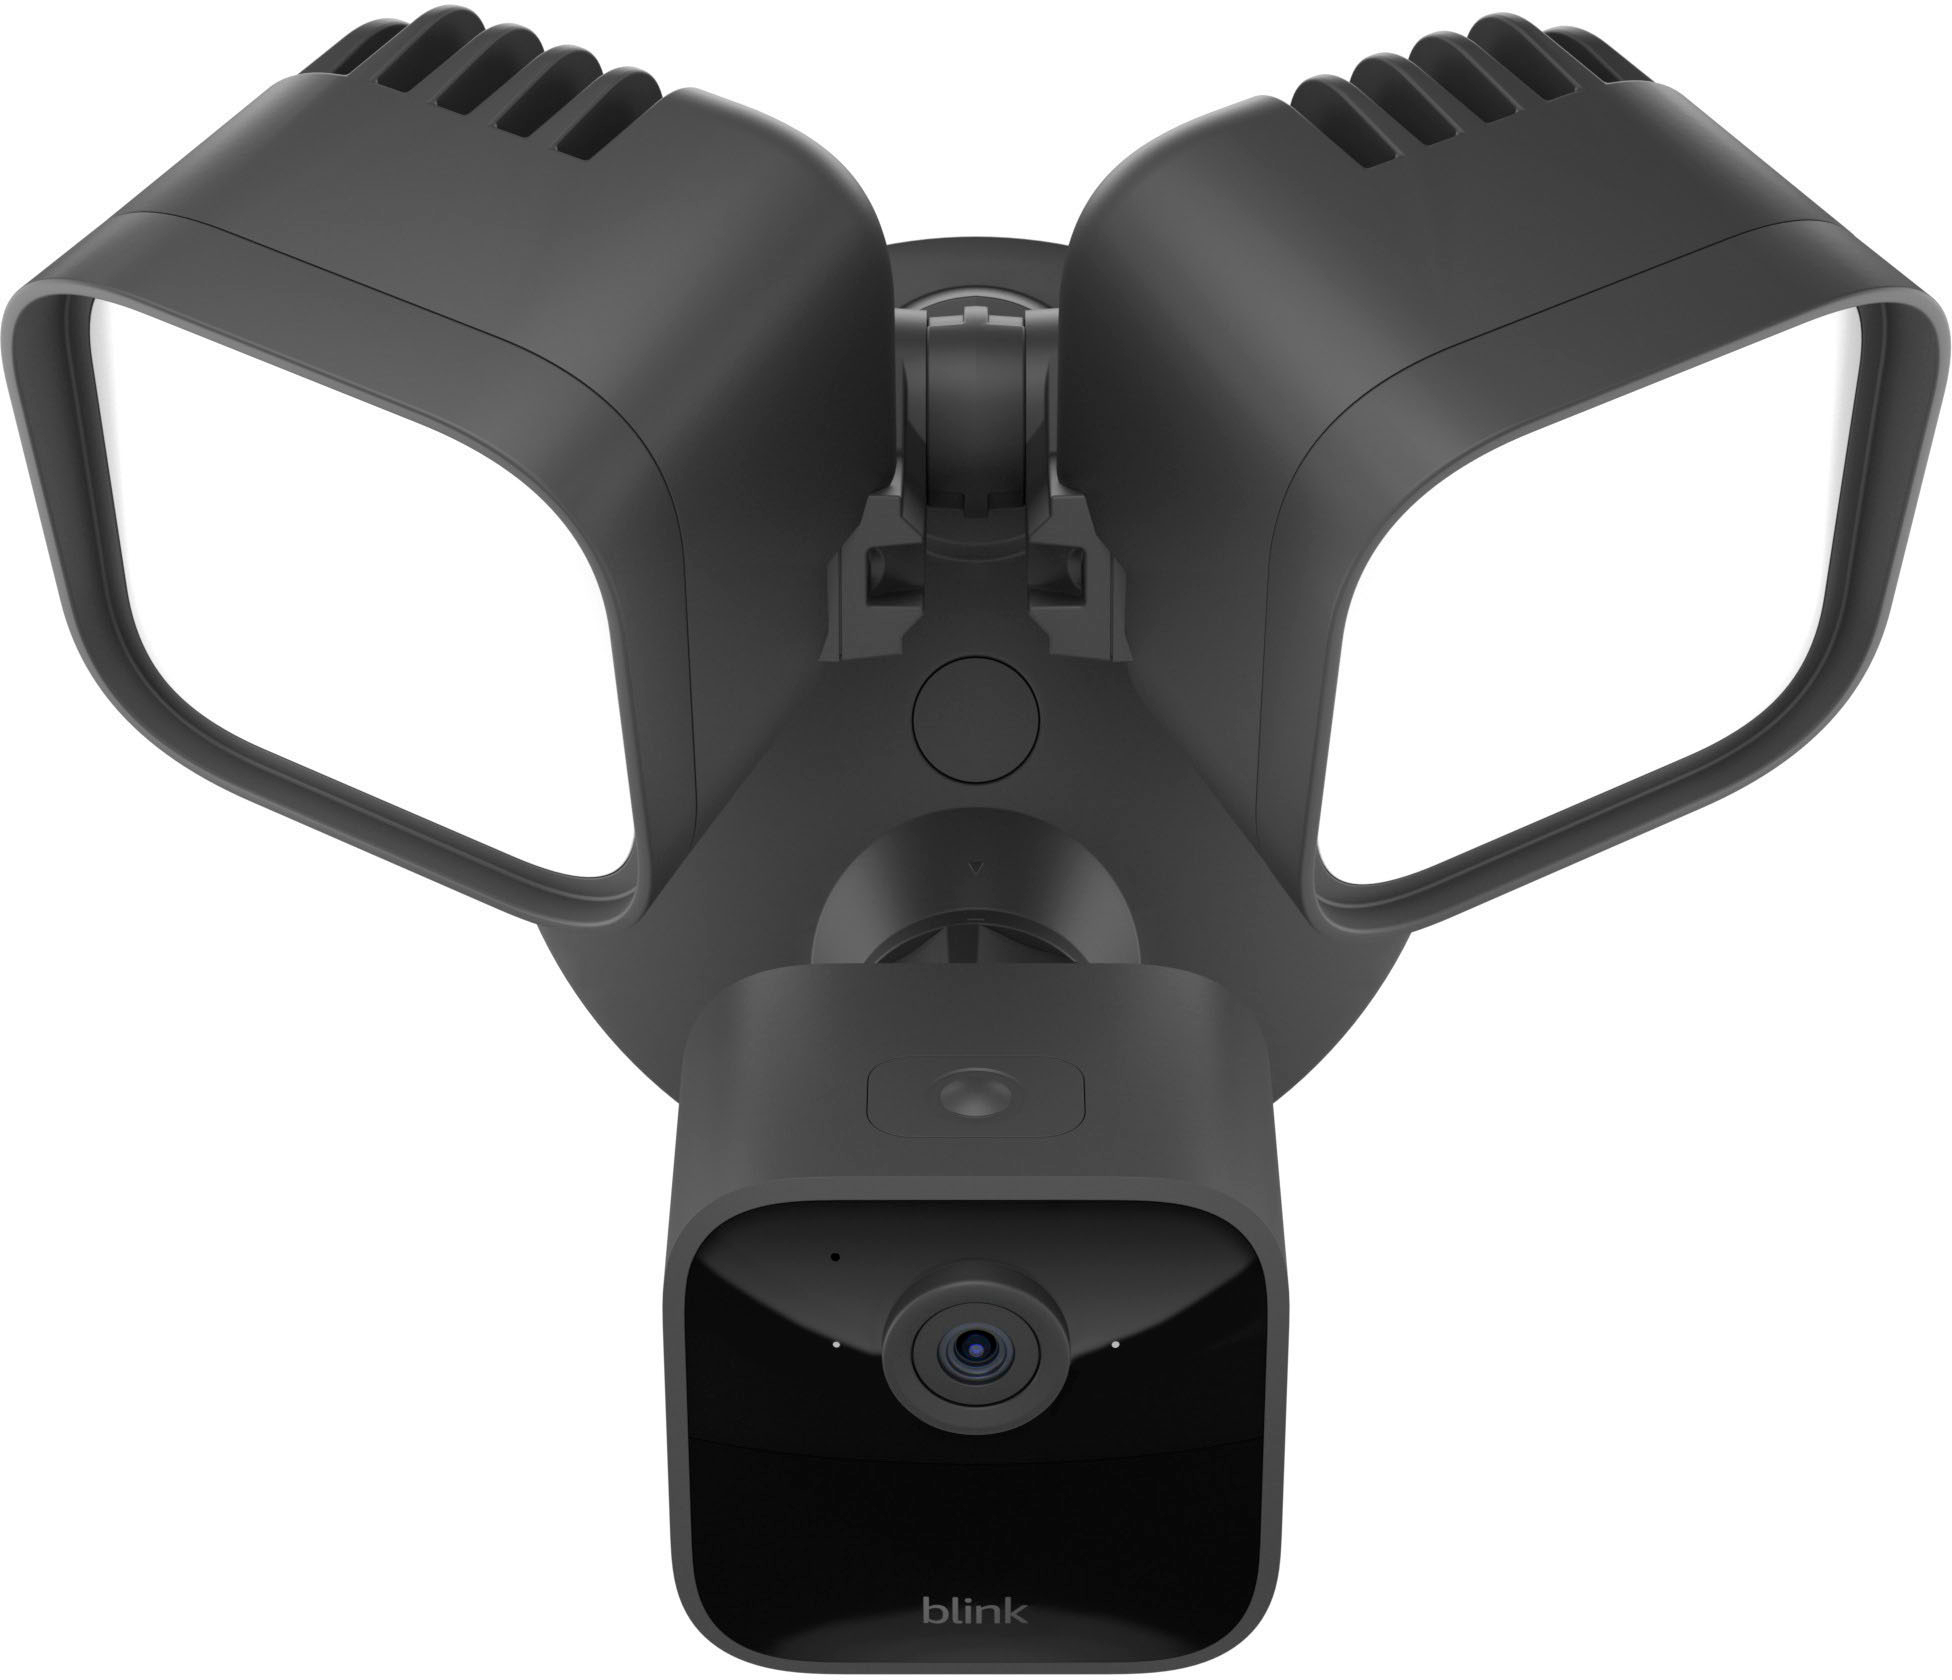 Blink Wired Floodlight Camera Setup Guide — Blink Support